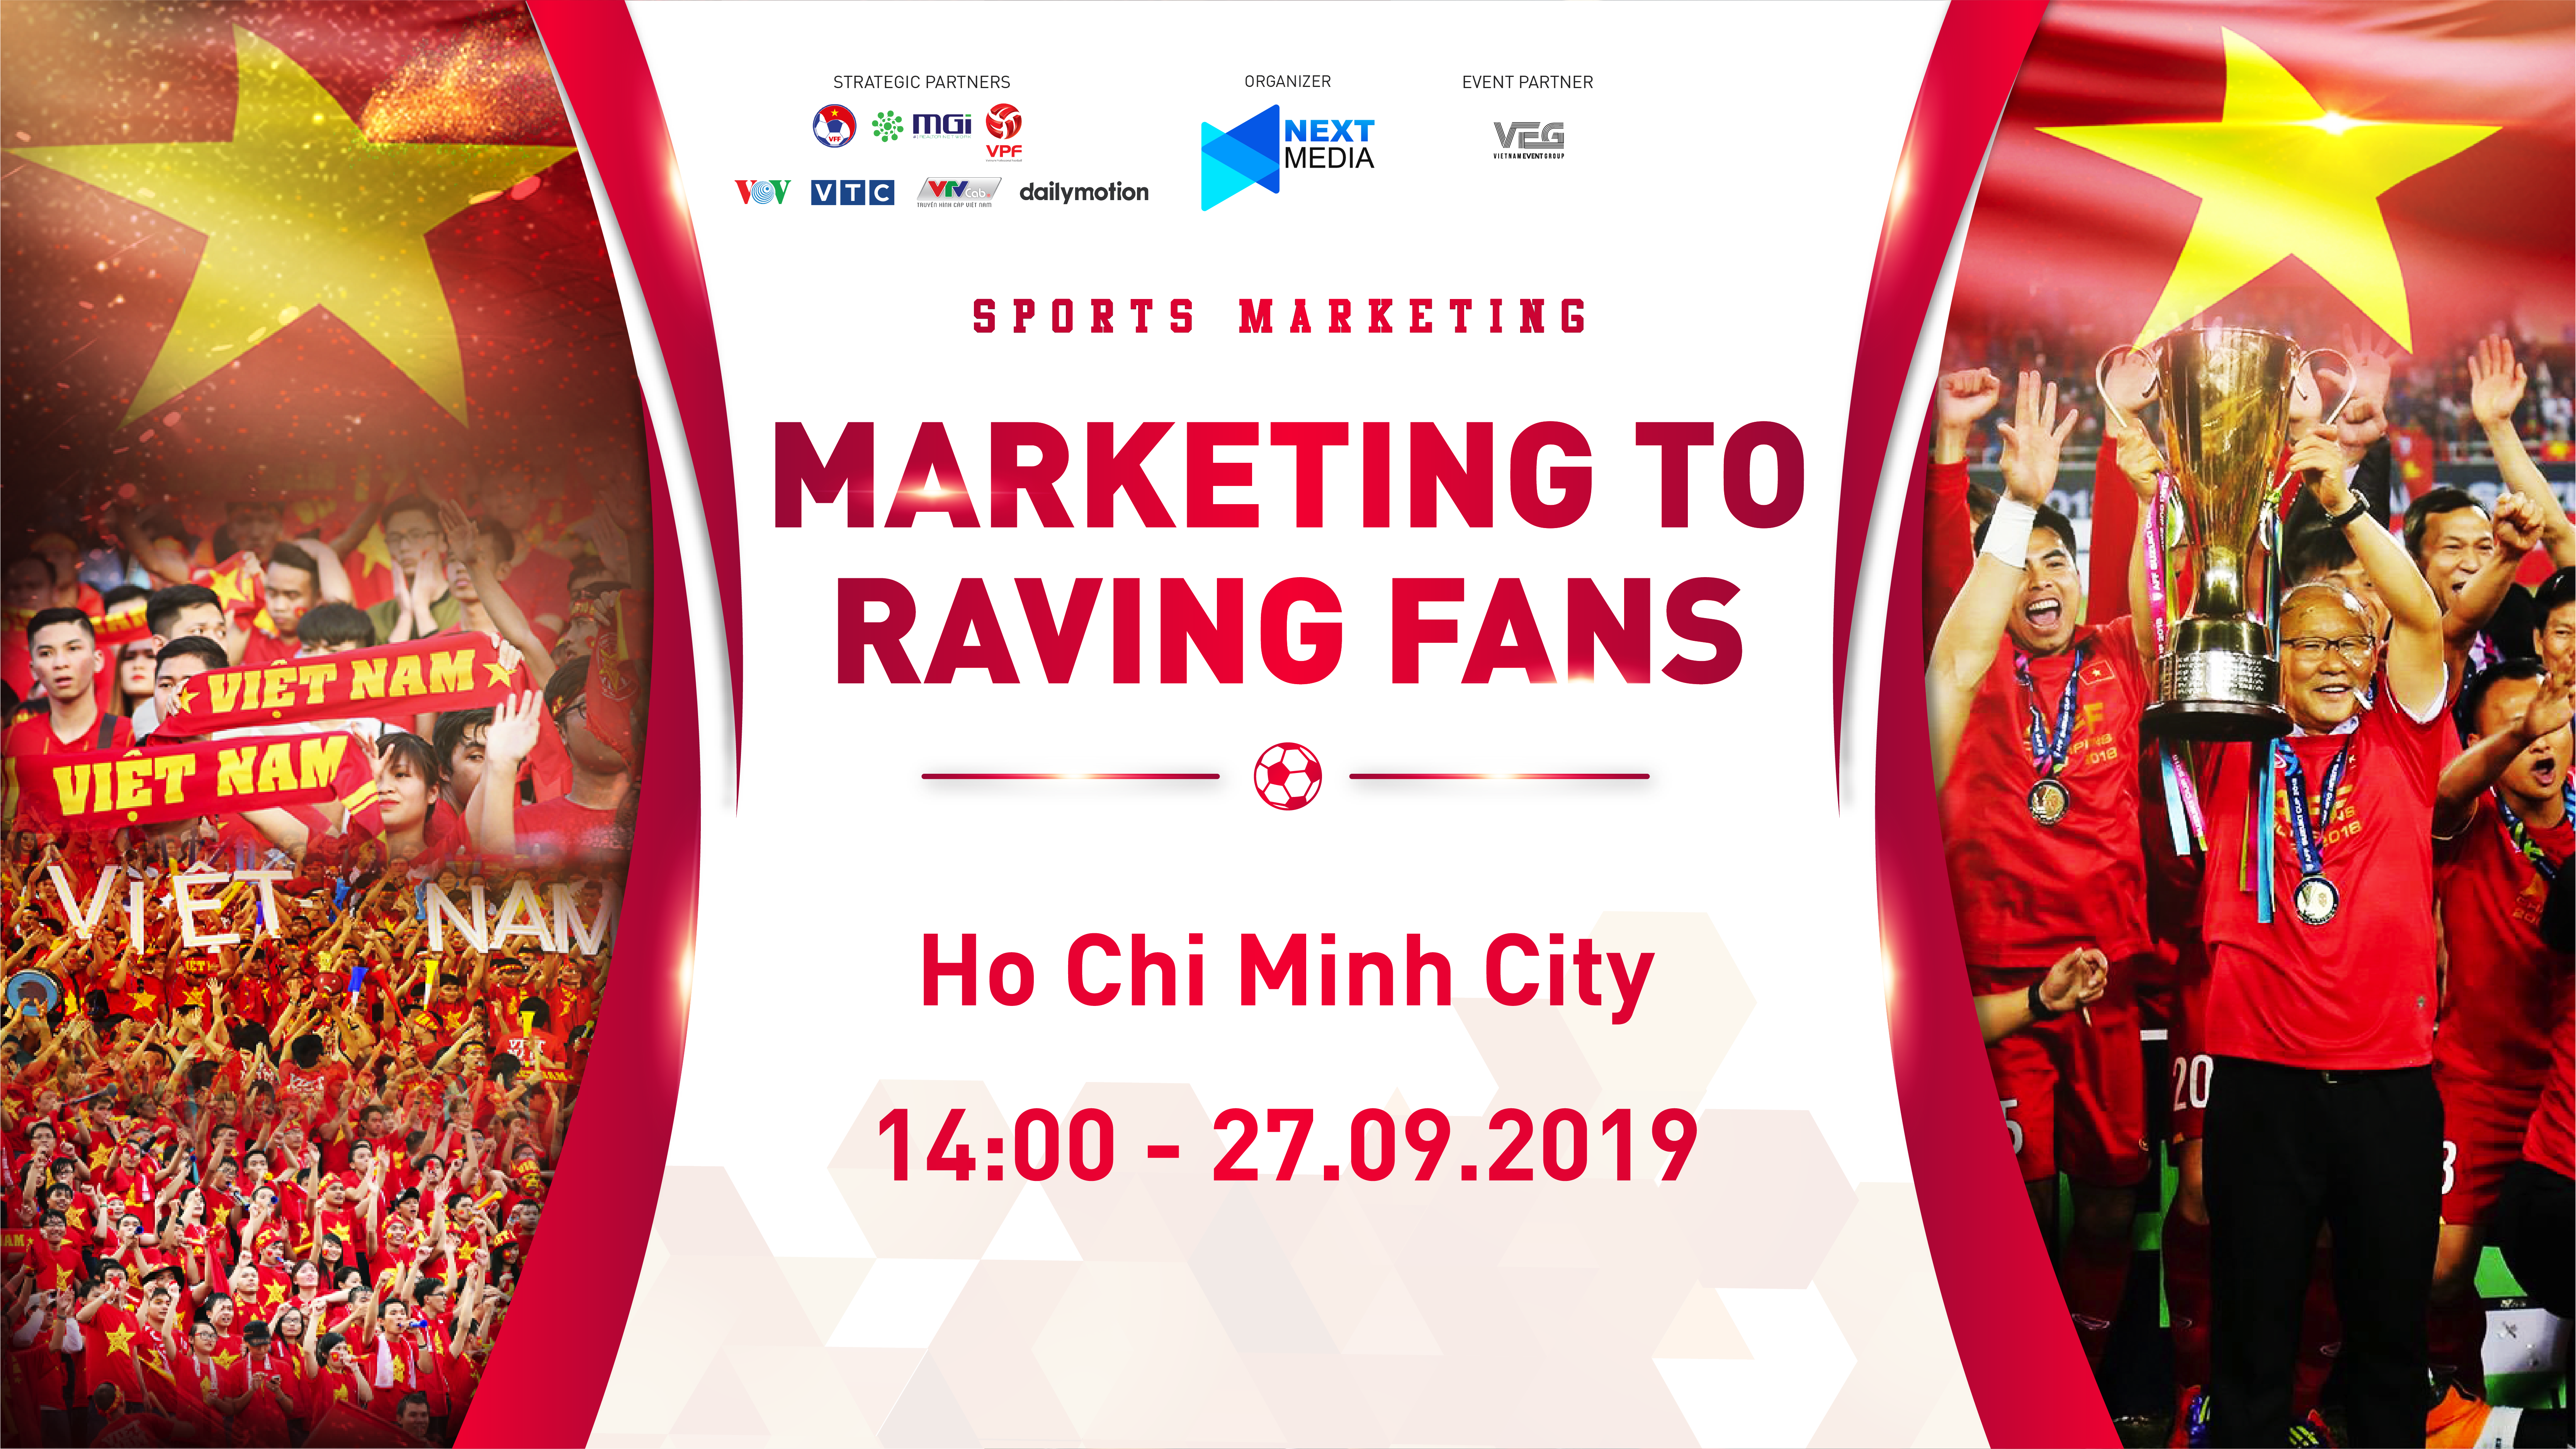 Sports Marketing lần đầu tổ chức tại Việt Nam bởi Next Media hình ảnh gốc 2